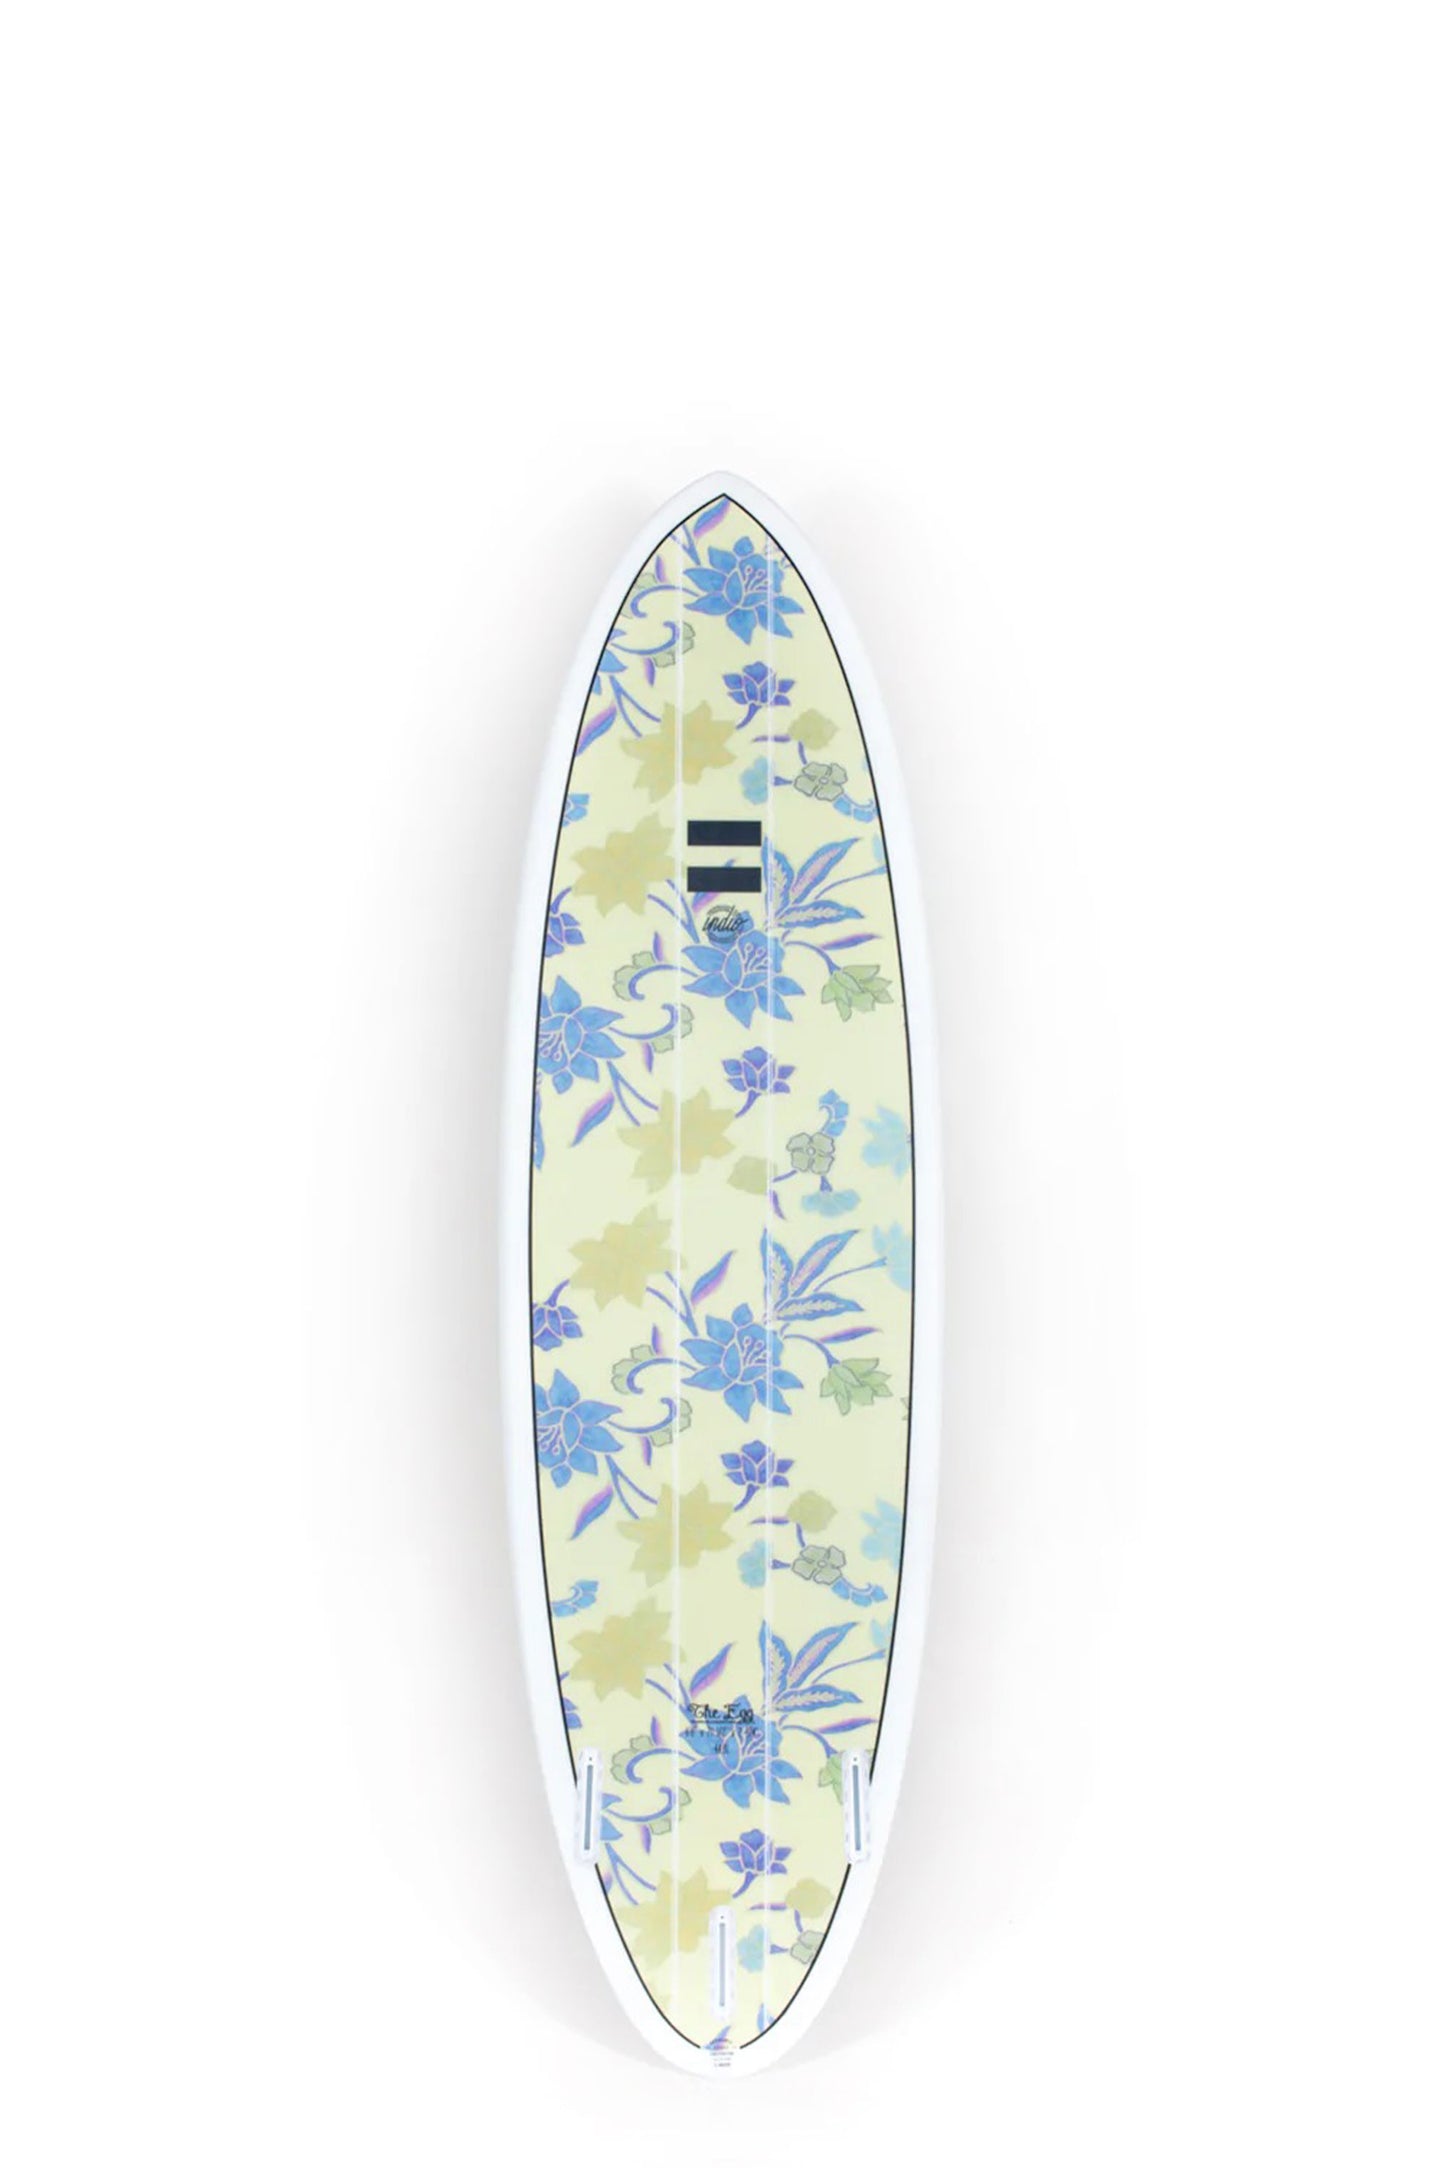 Pukas Surf Shop - Indio Endurance - THE EGG Flowers - 7´2 x 21 3/4 x 2 3/4 - 50L